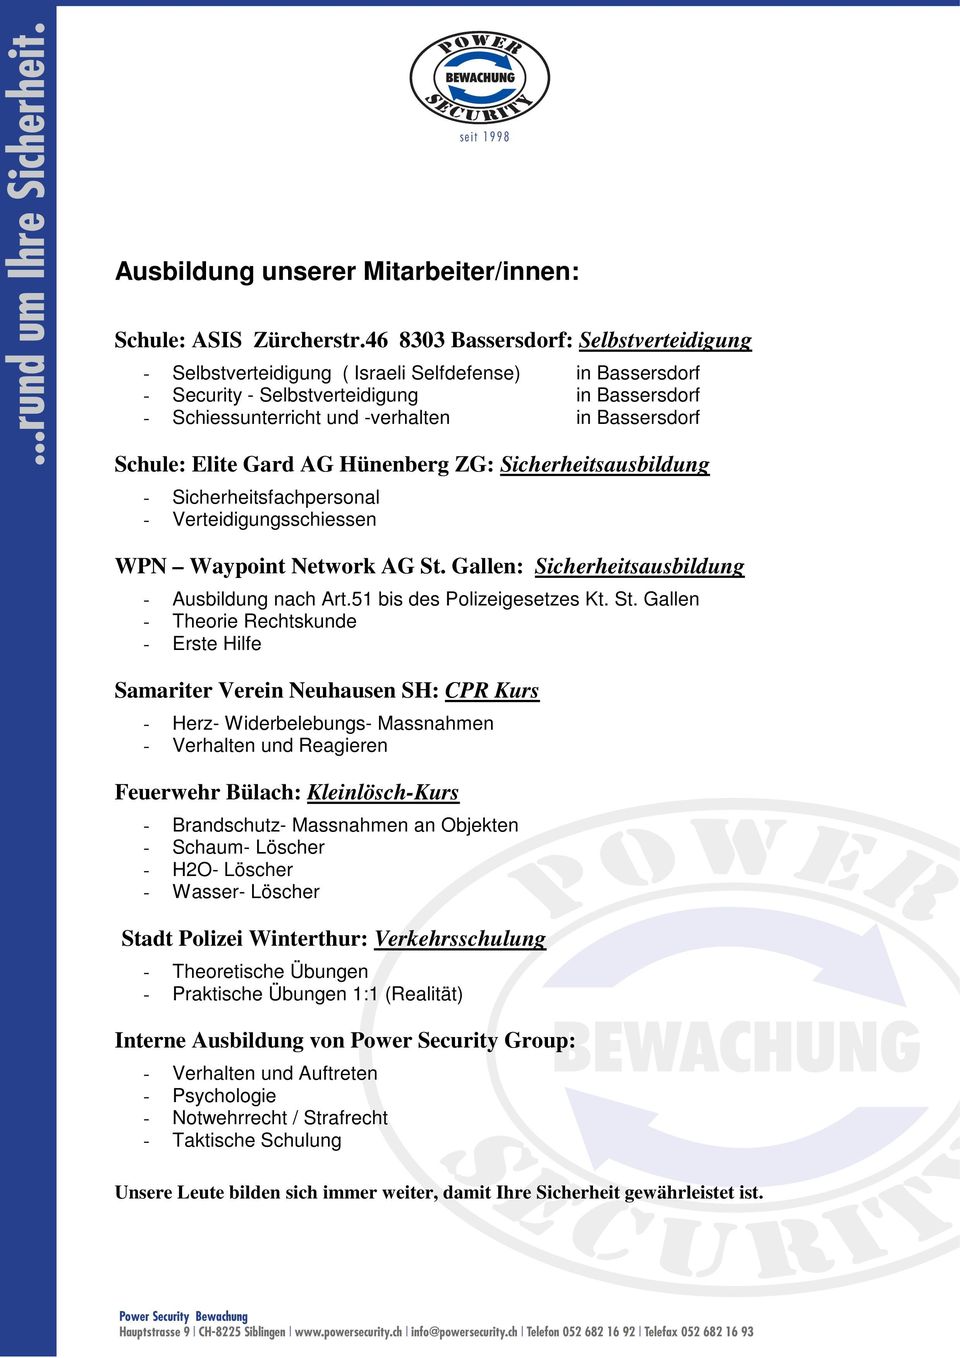 Schule: Elite Gard AG Hünenberg ZG: Sicherheitsausbildung - Sicherheitsfachpersonal - Verteidigungsschiessen WPN Waypoint Network AG St. Gallen: Sicherheitsausbildung - Ausbildung nach Art.